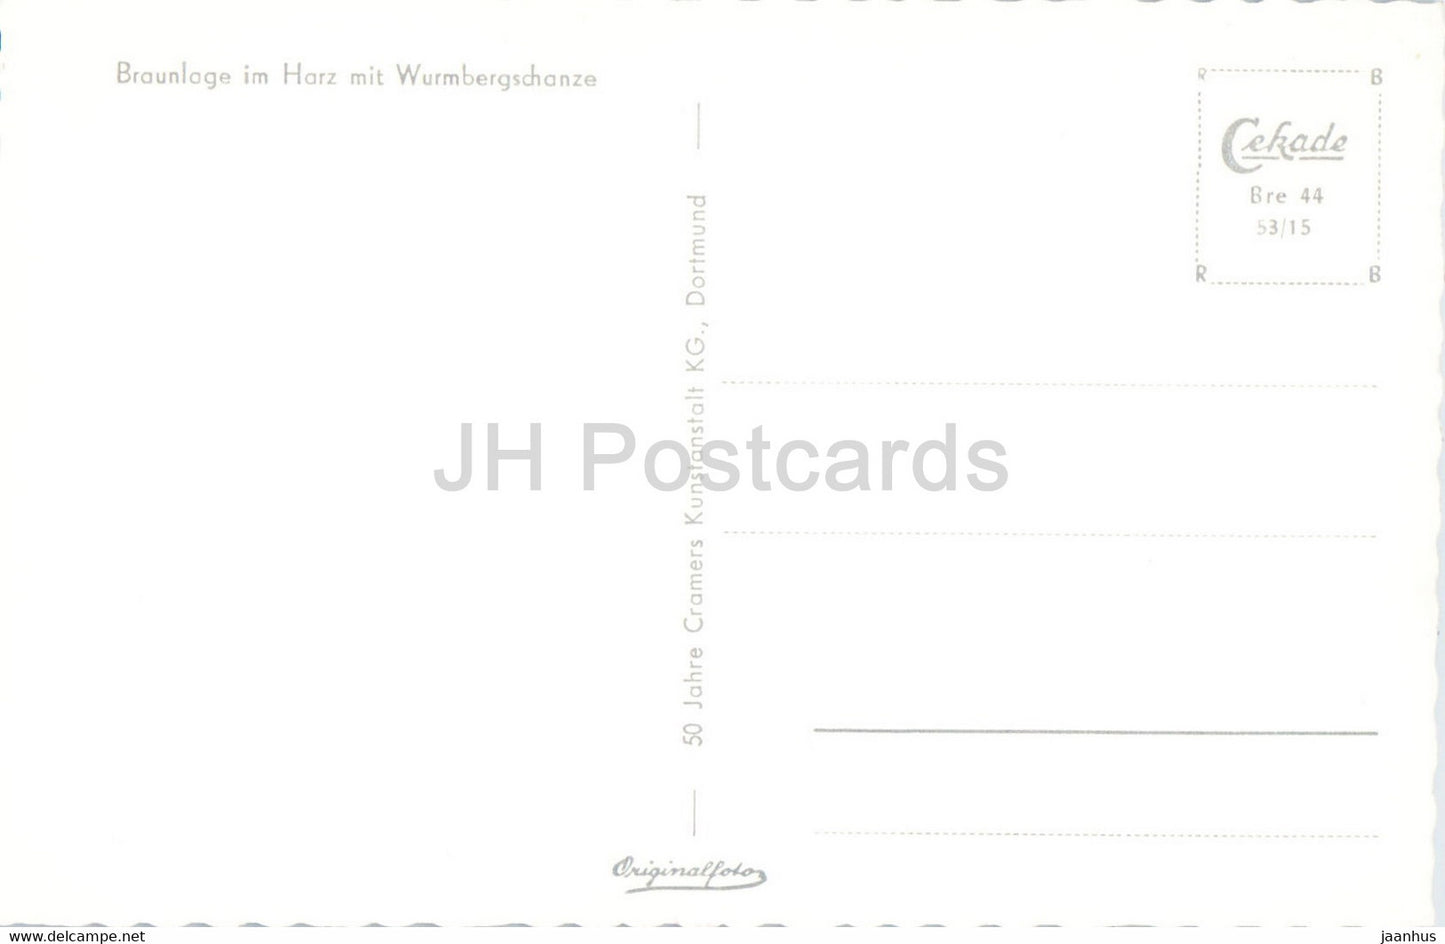 Braunlage im Harz mit Wurmbergschanze - alte Postkarte - Deutschland - unbenutzt